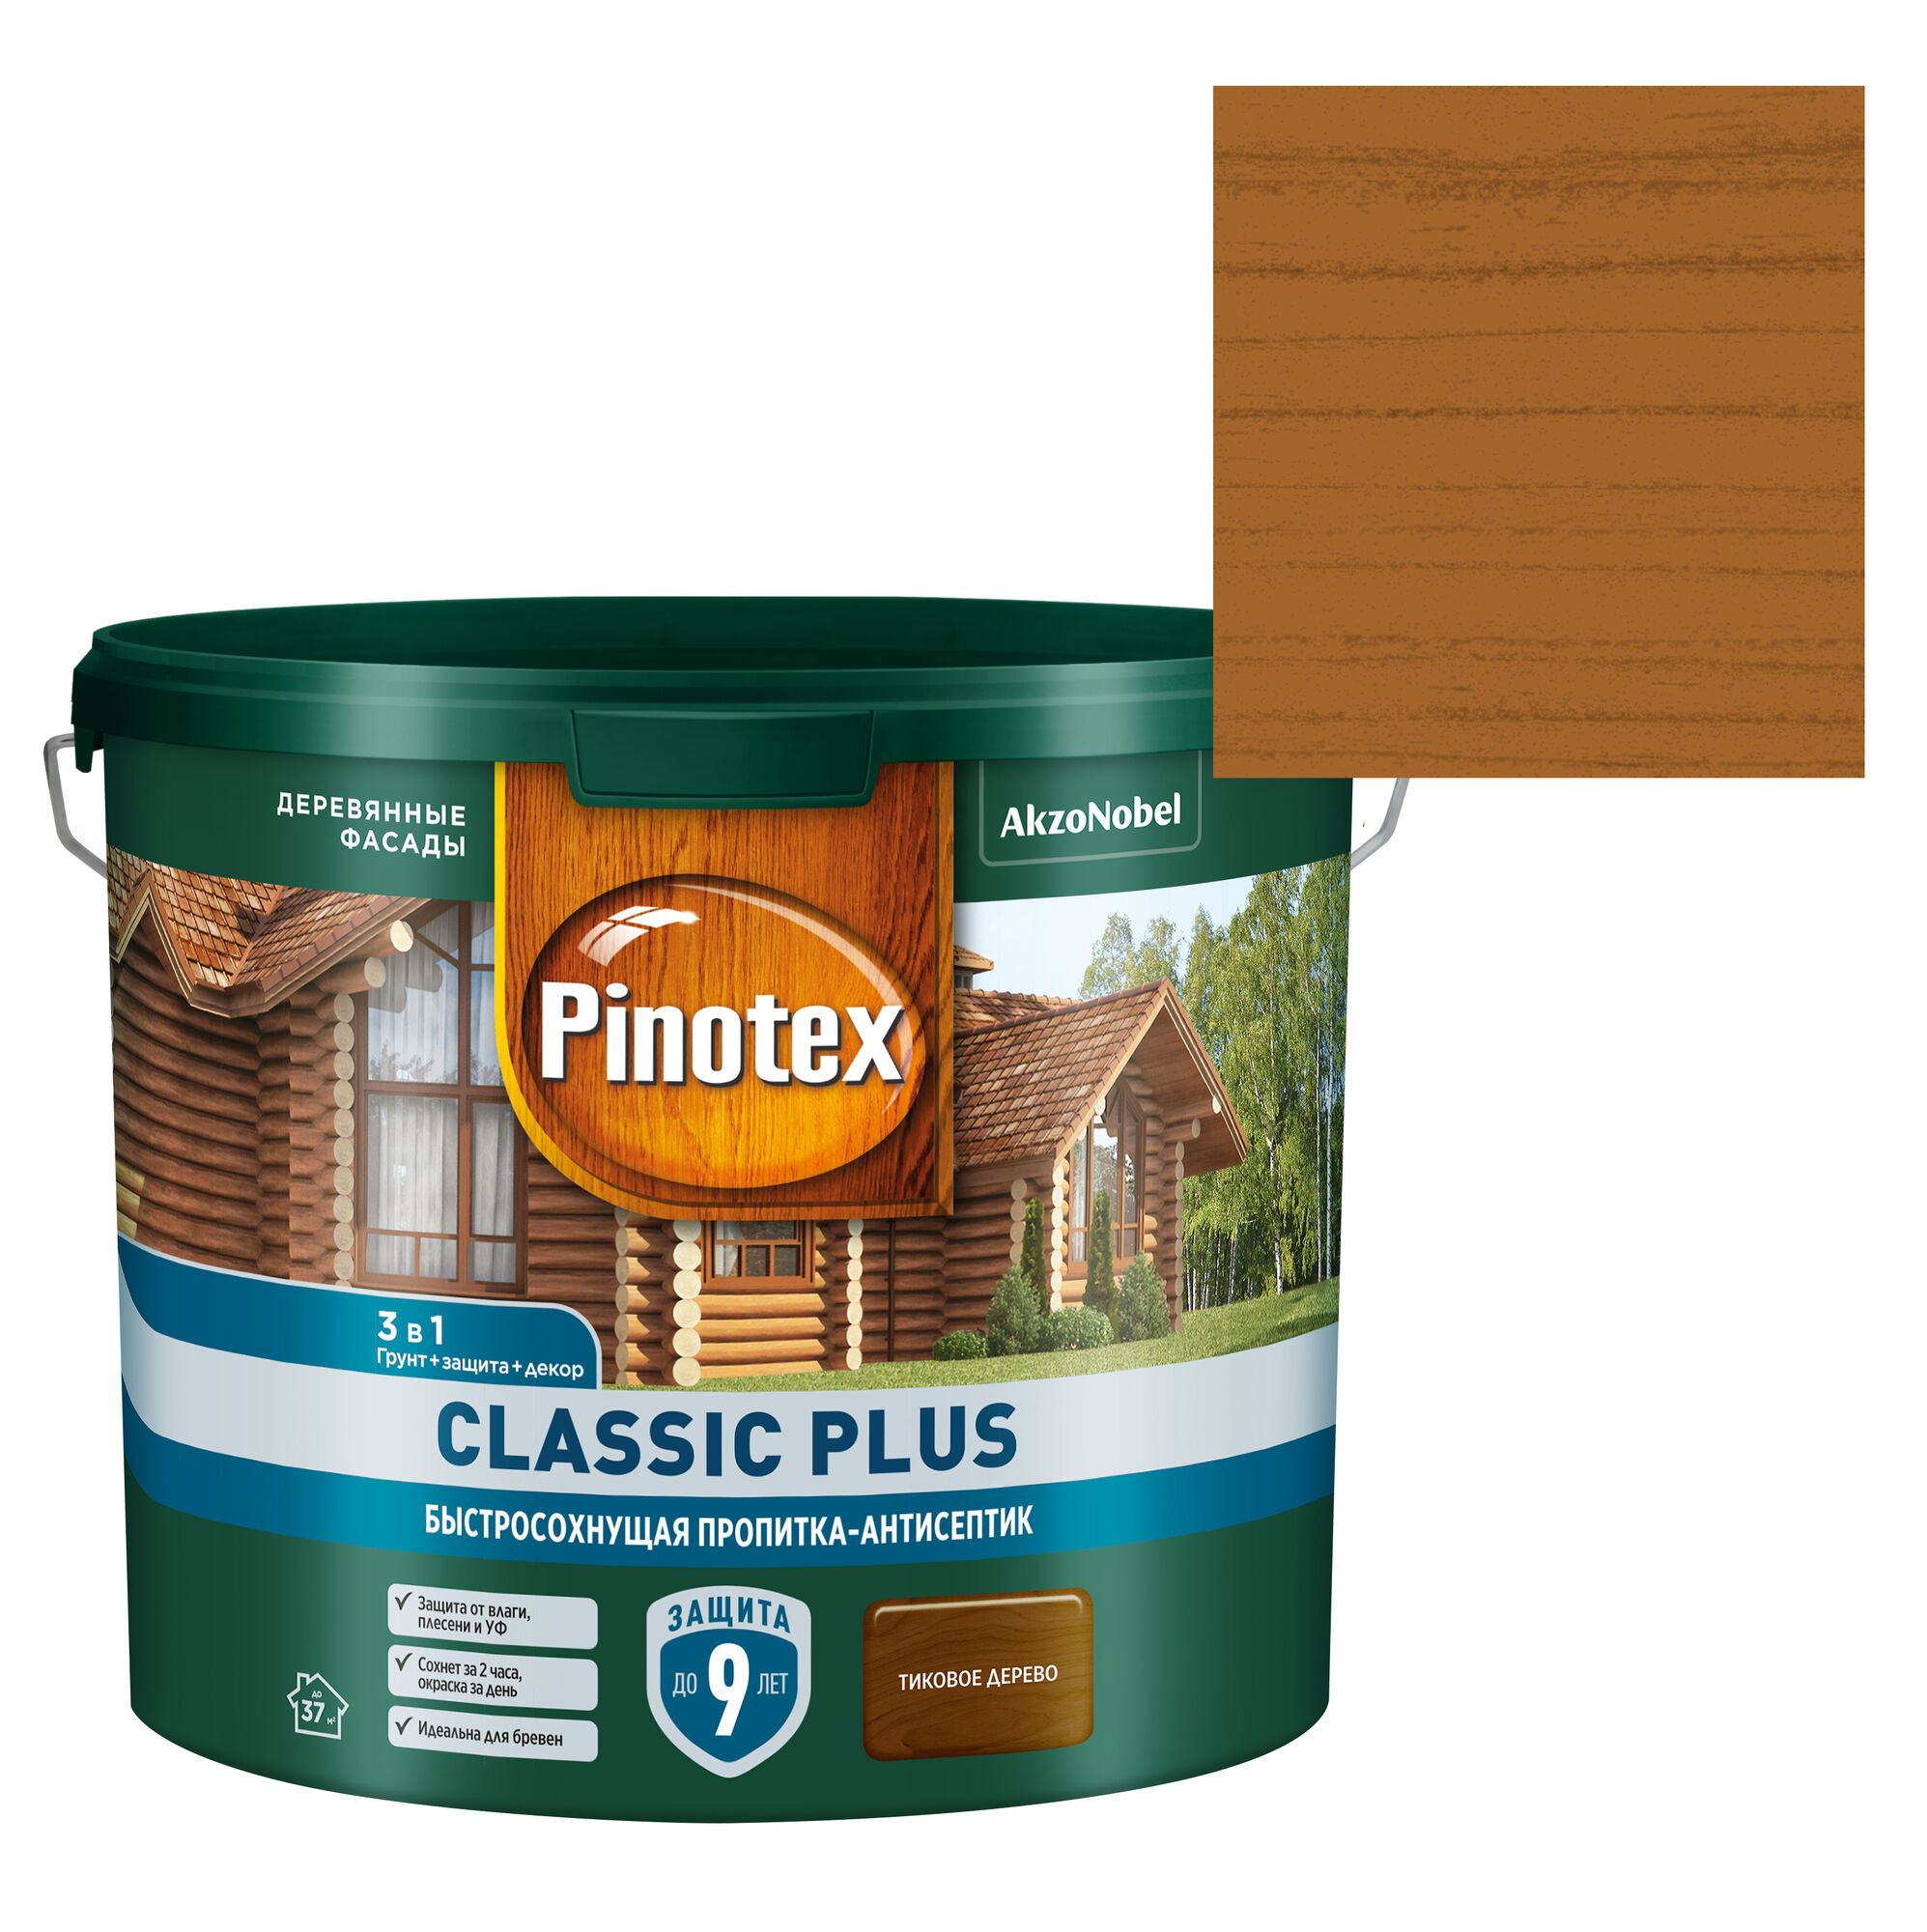 Защитно-декоративная пропитка для древесины Pinotex Classic (Пинотекс Классик)